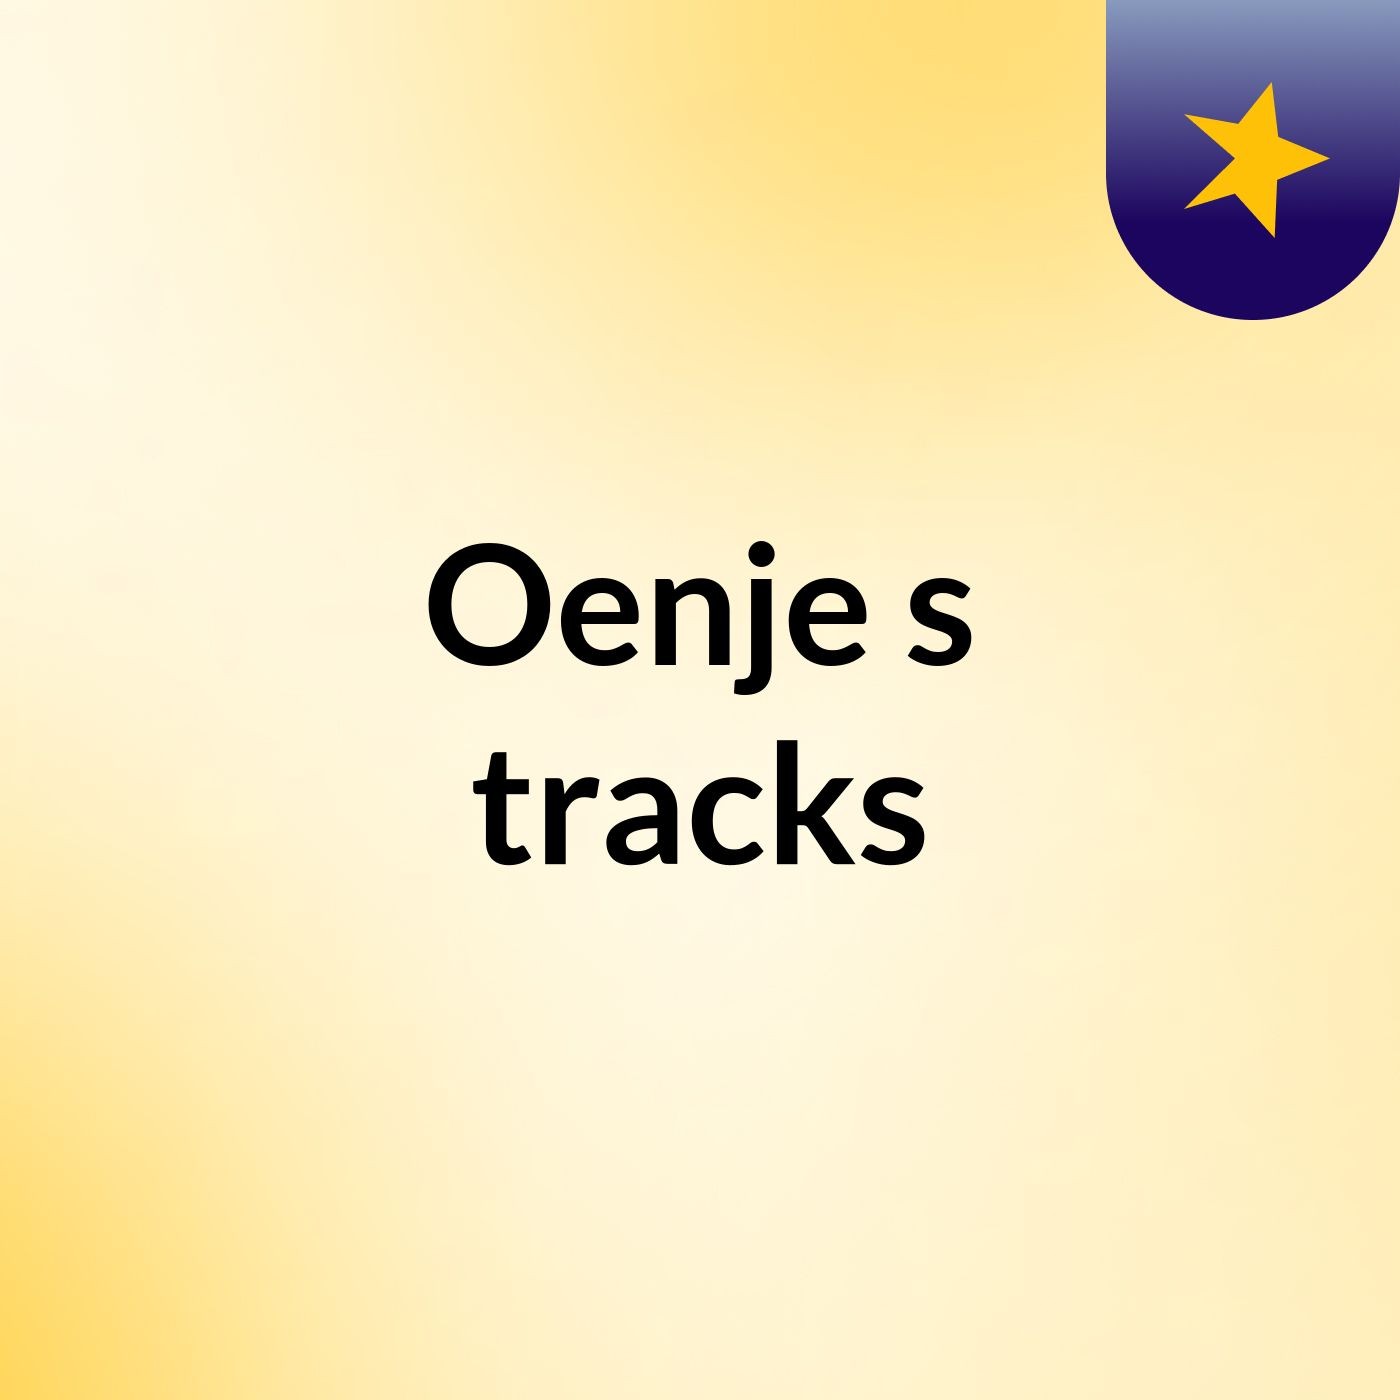 Oenje's tracks